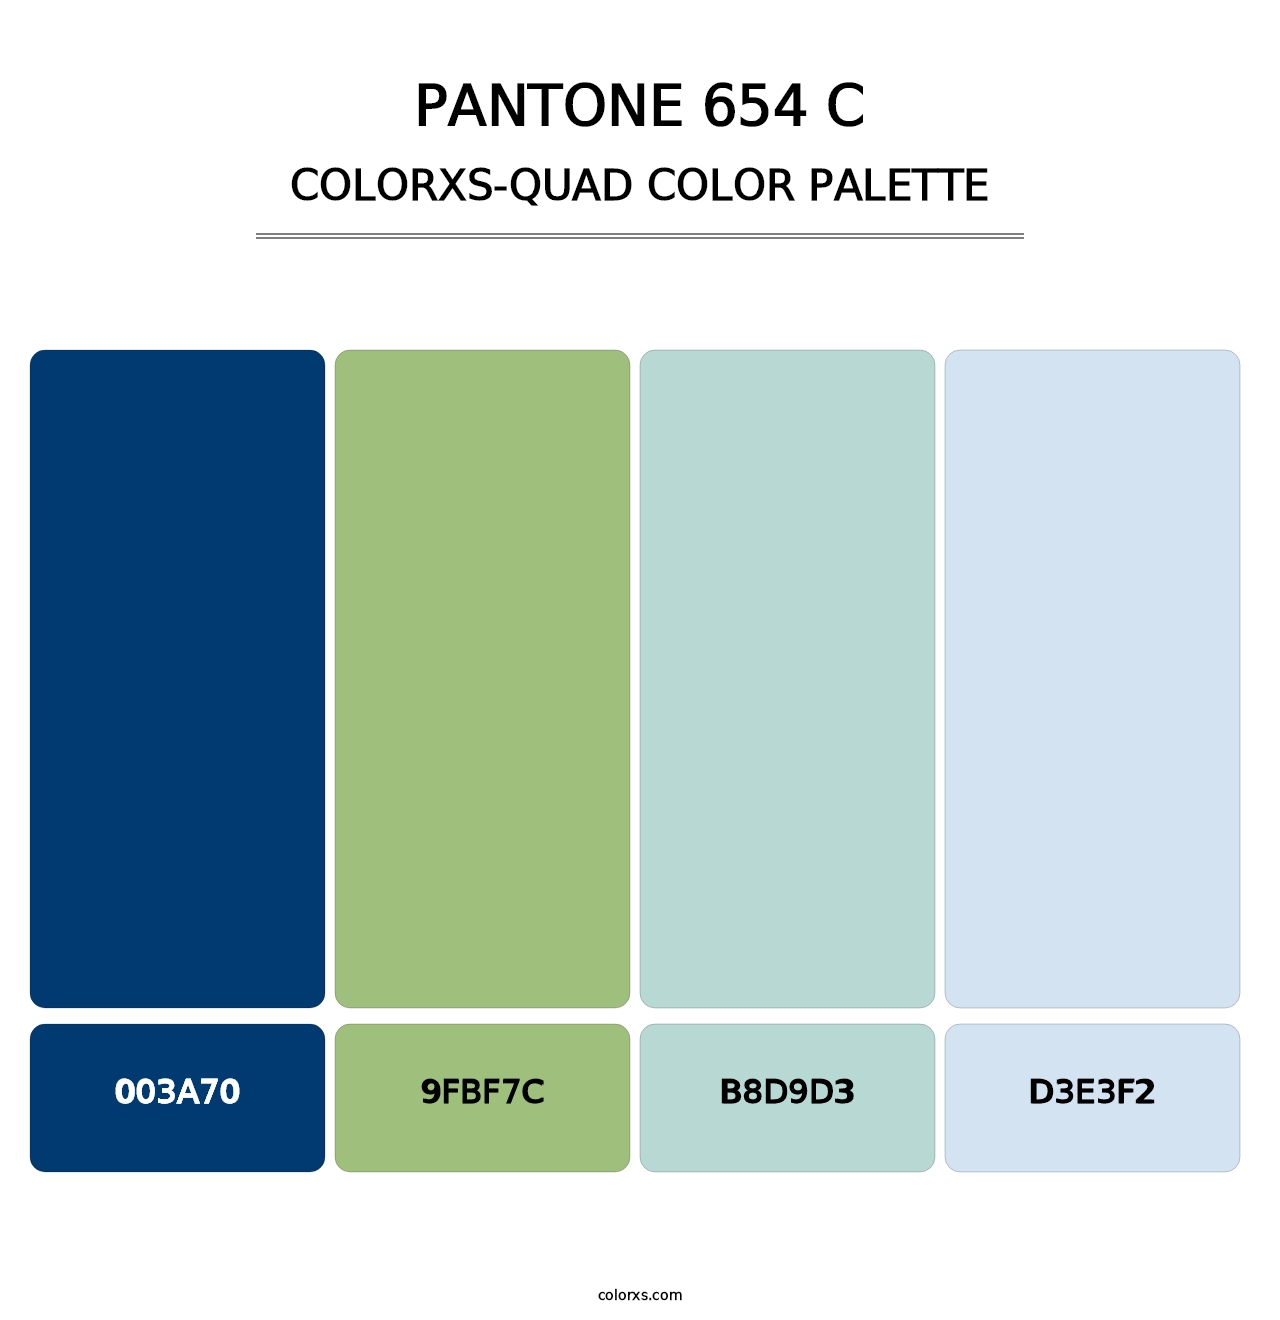 PANTONE 654 C - Colorxs Quad Palette